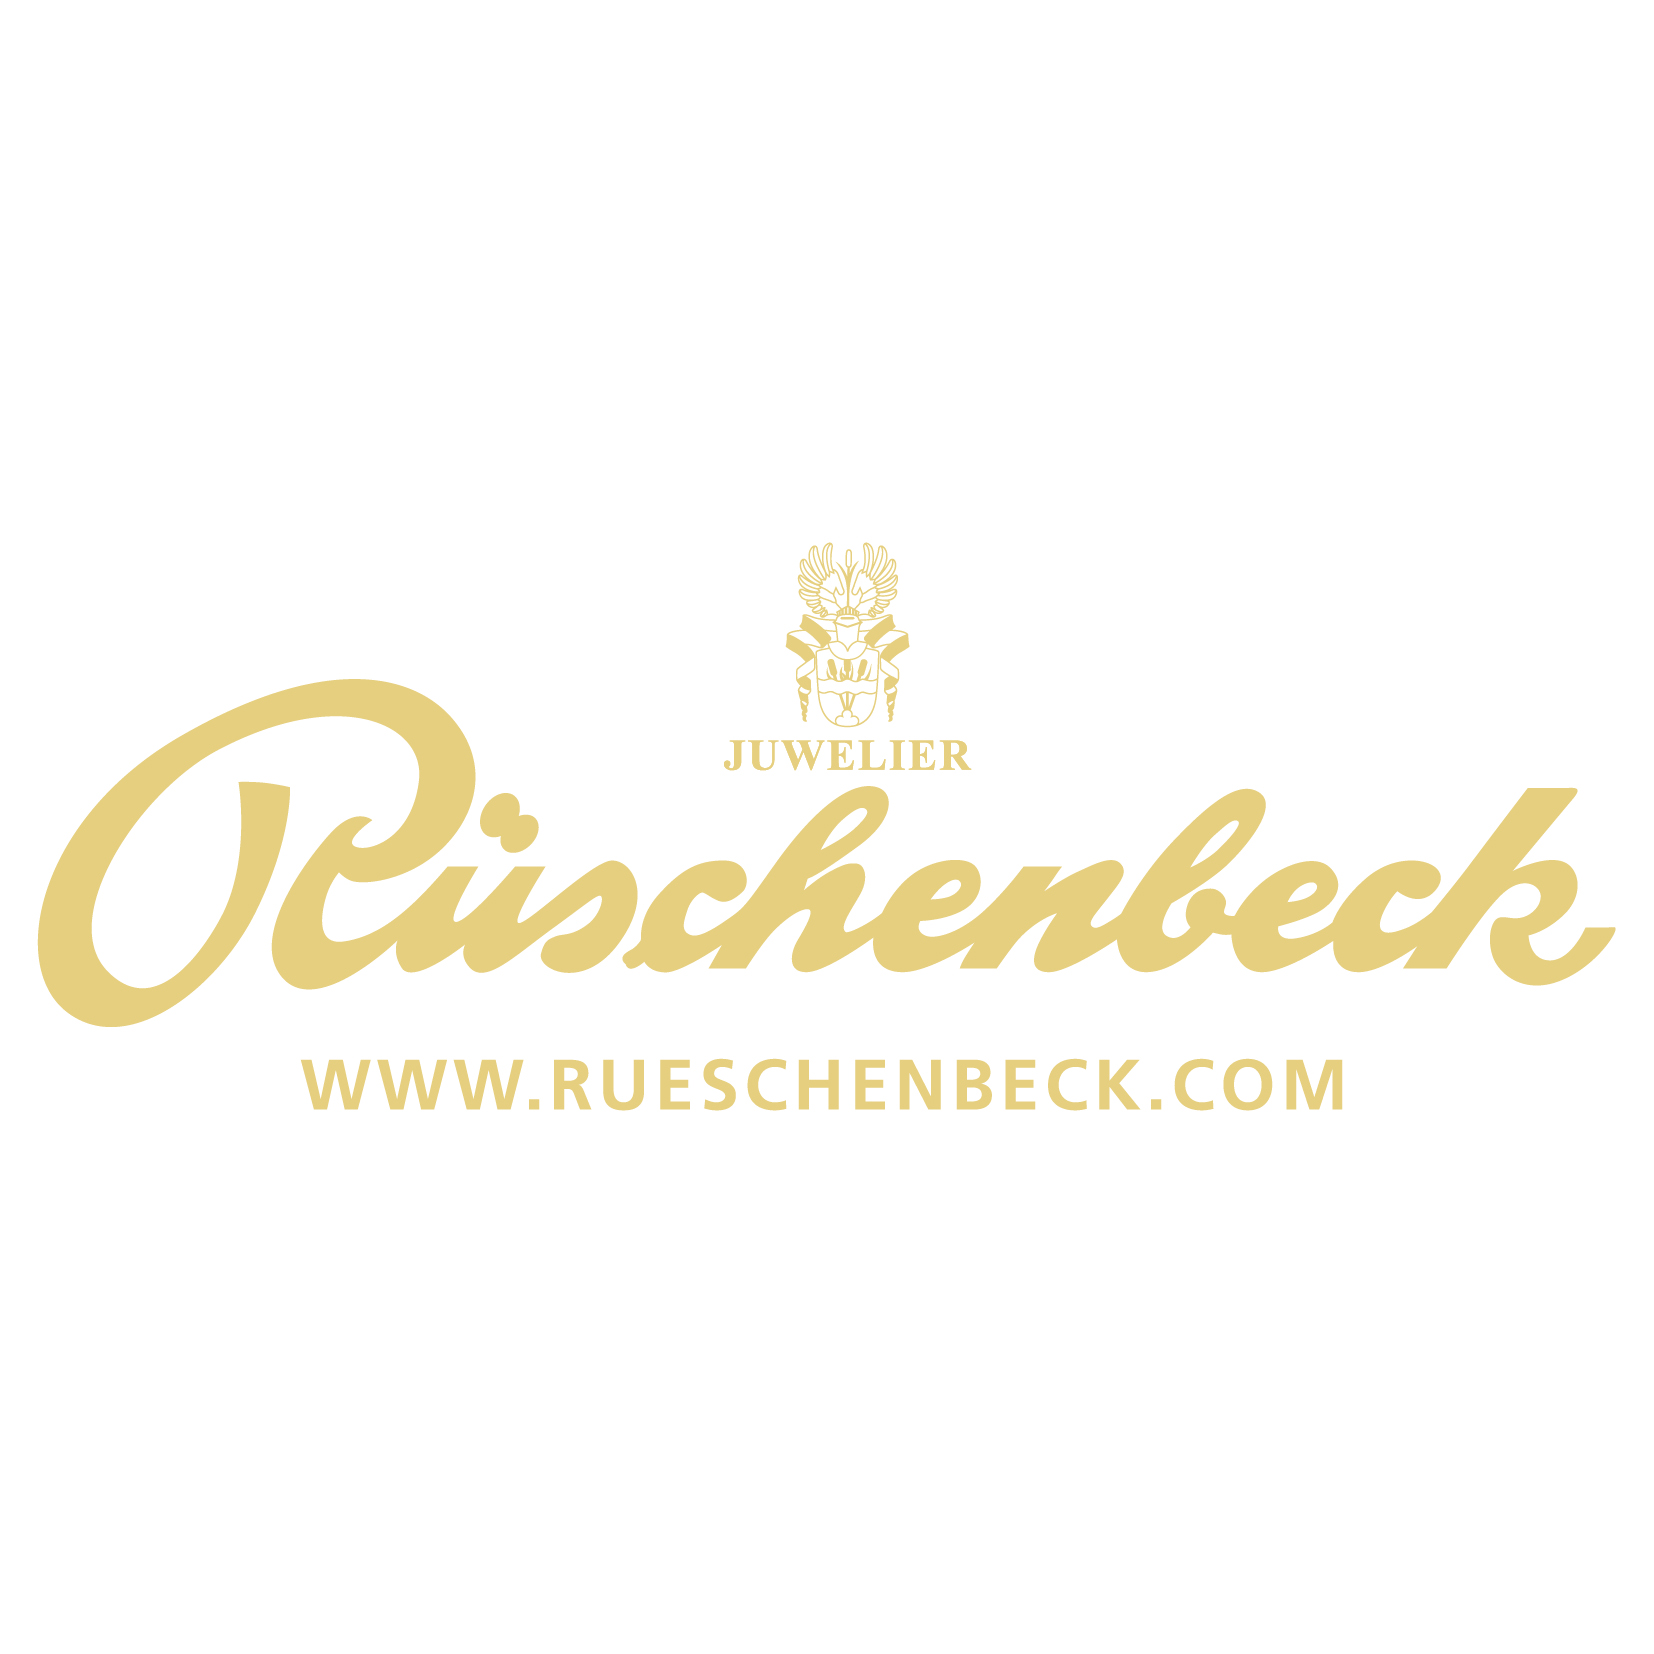 Rueschenbeck 1C www